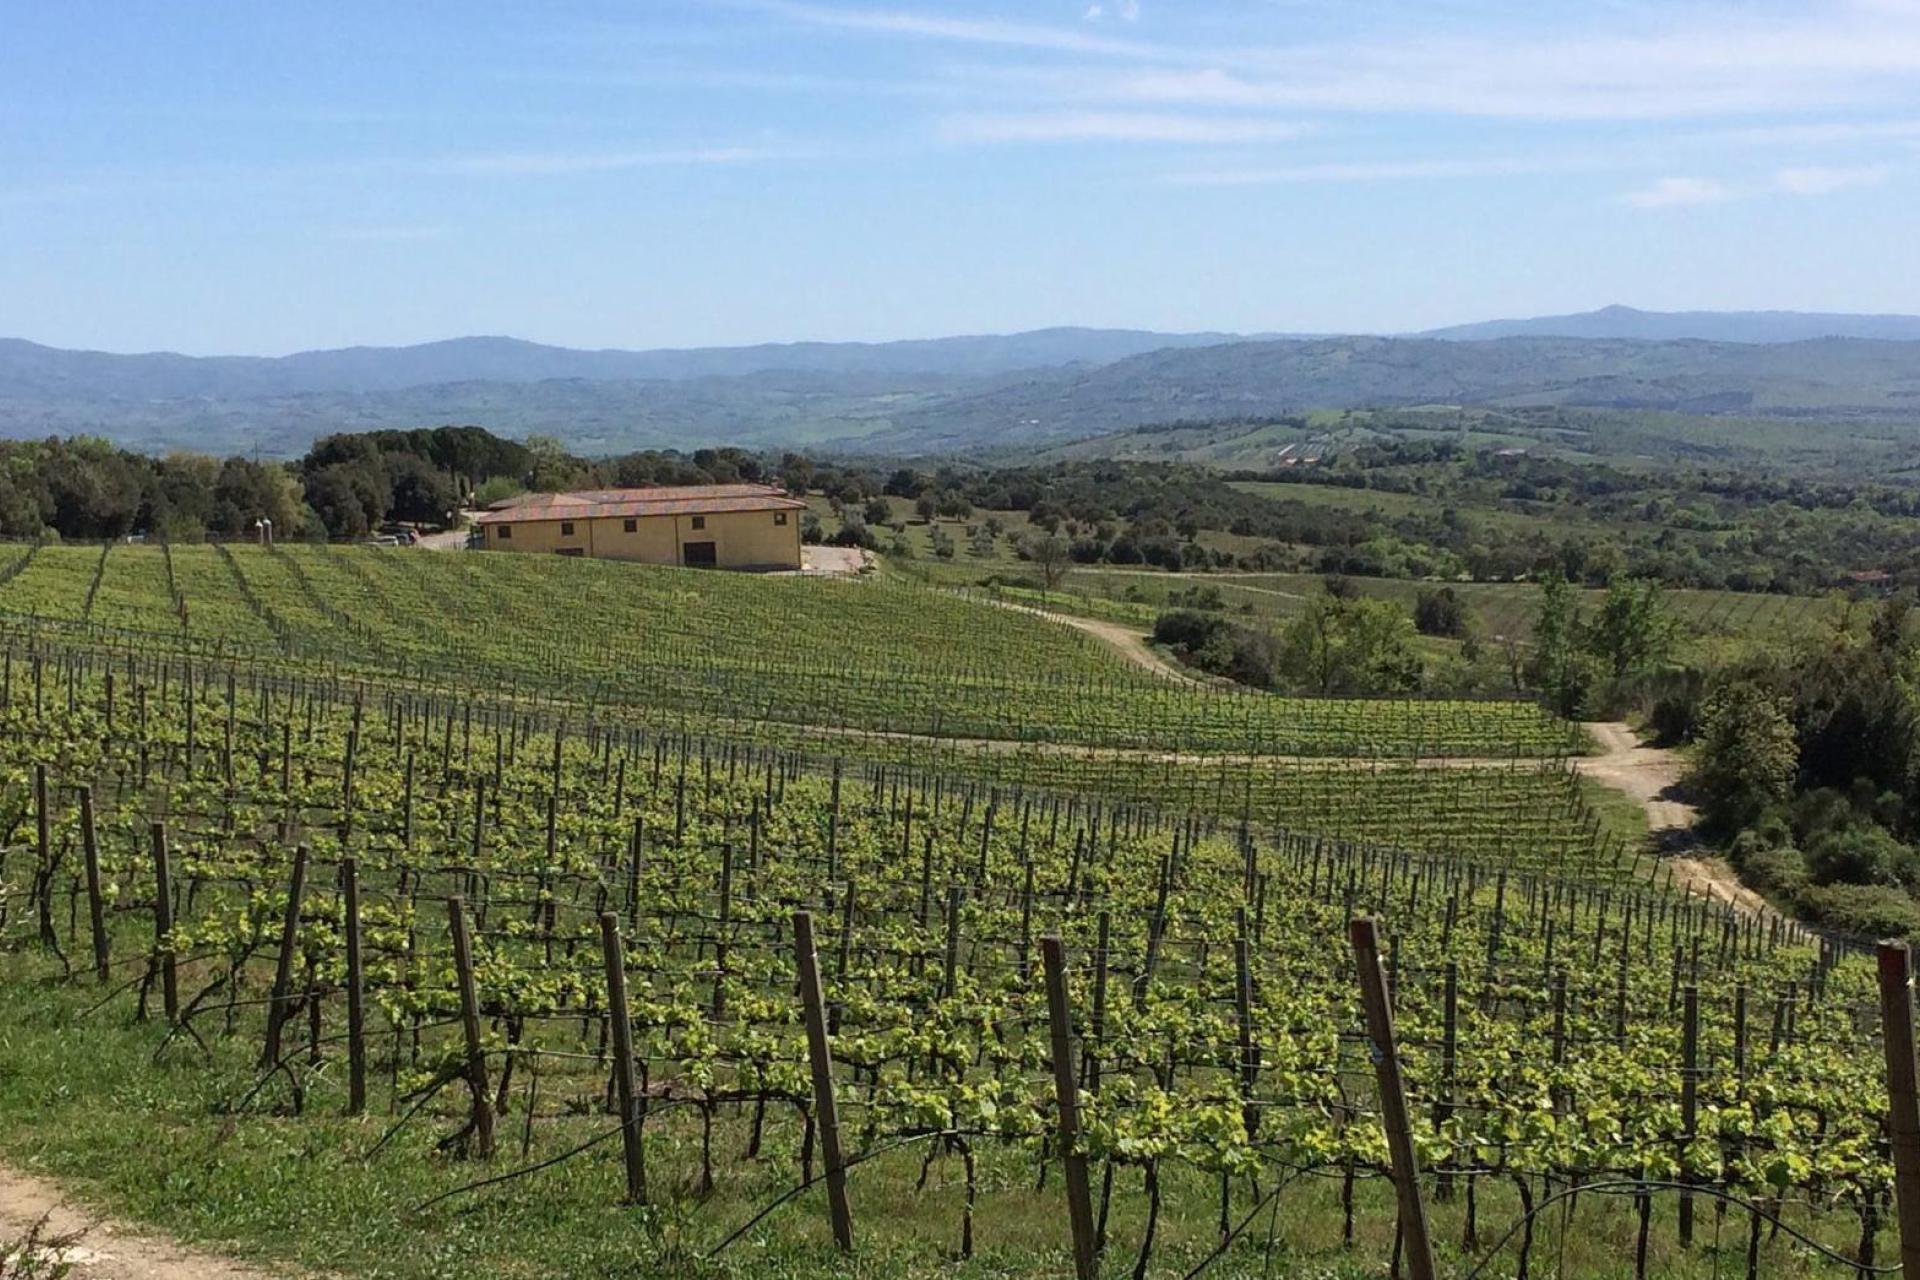 Agriturismo Toscane Agriturismo zuidelijk van Siena tussen de wijngaarden